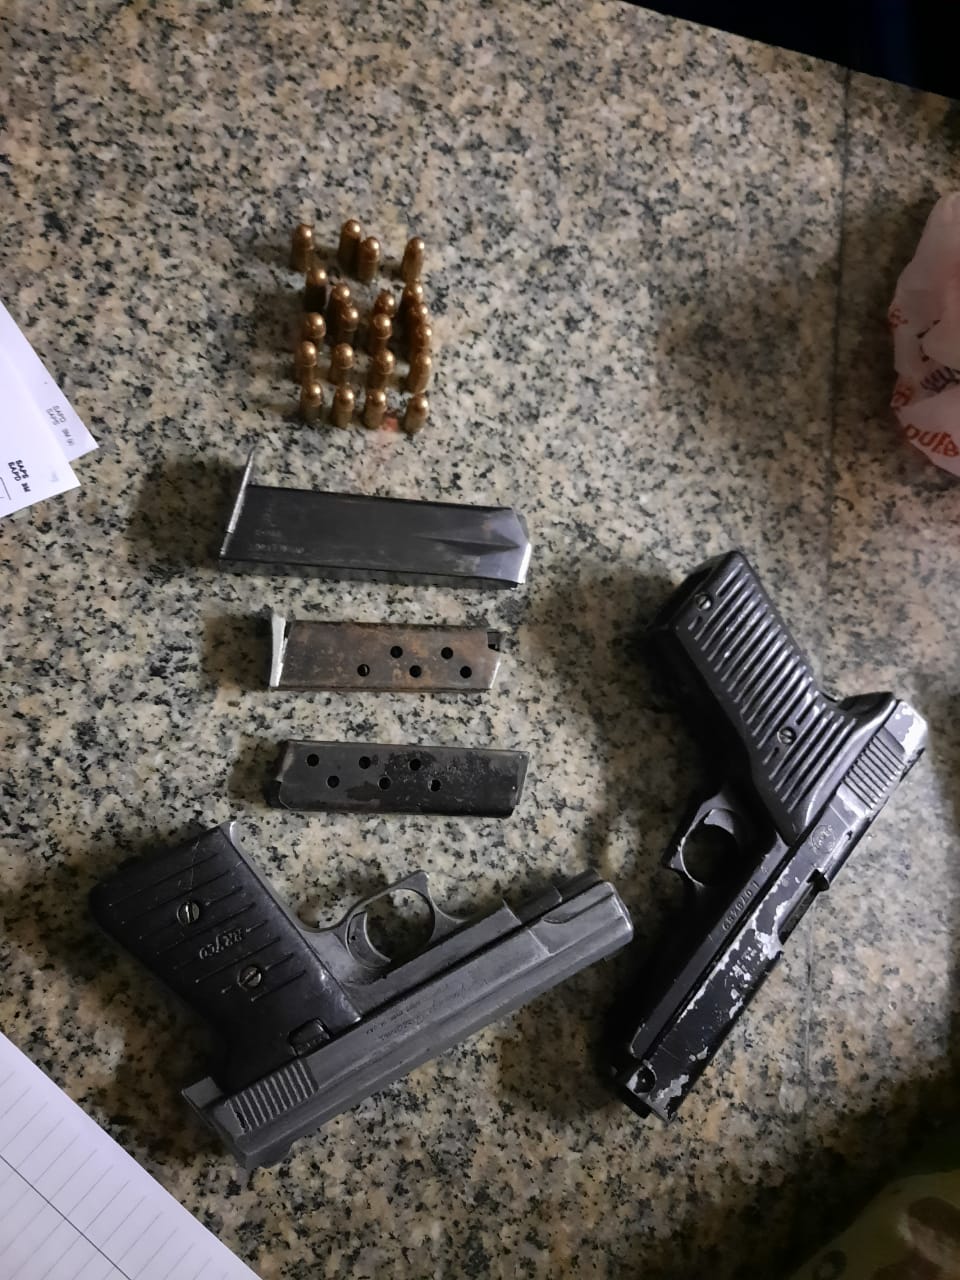 Five pistols seized, three men in court